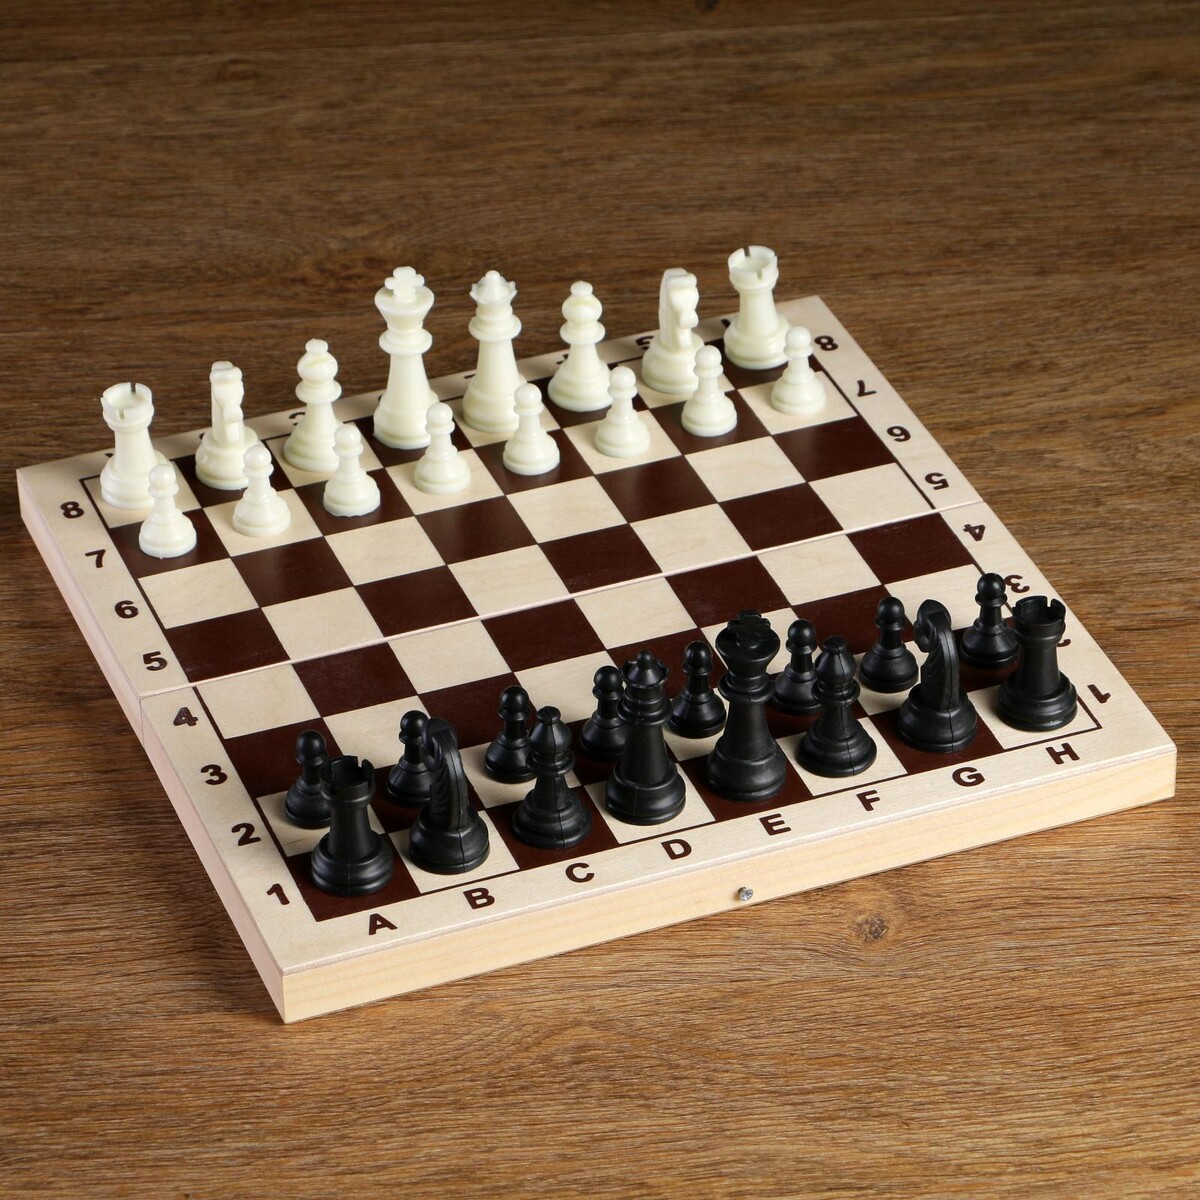 Шахматные фигуры, пластик, король h-6.2 см, пешка h-3 см шахматные фигуры гроссмейстерские